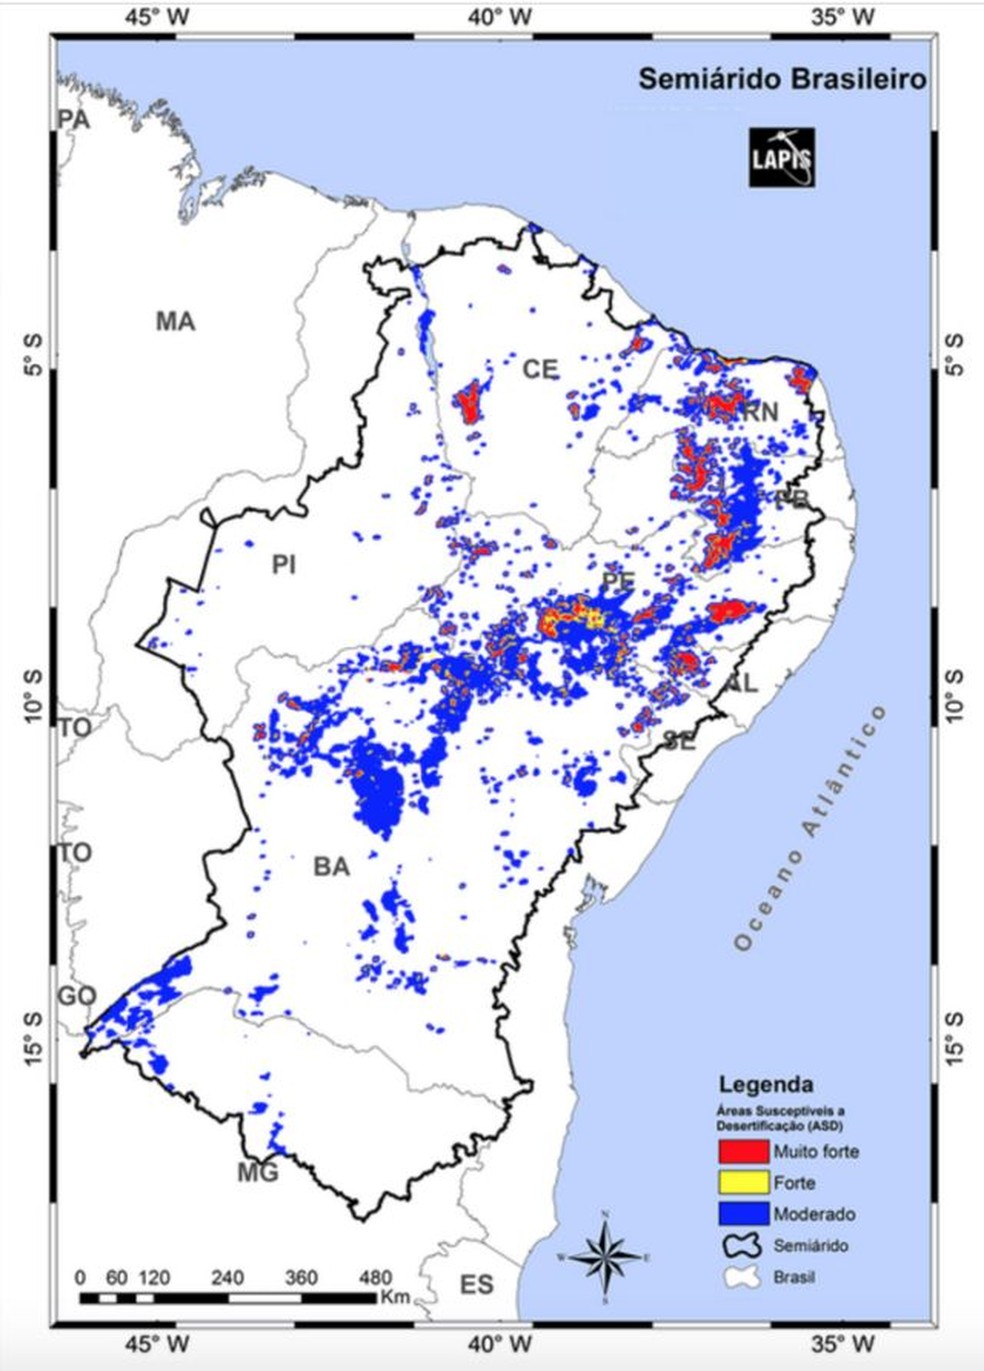 Mapa das áreas suscetíveis à desertificação no Semiárido brasileiro — Foto: LAPIS